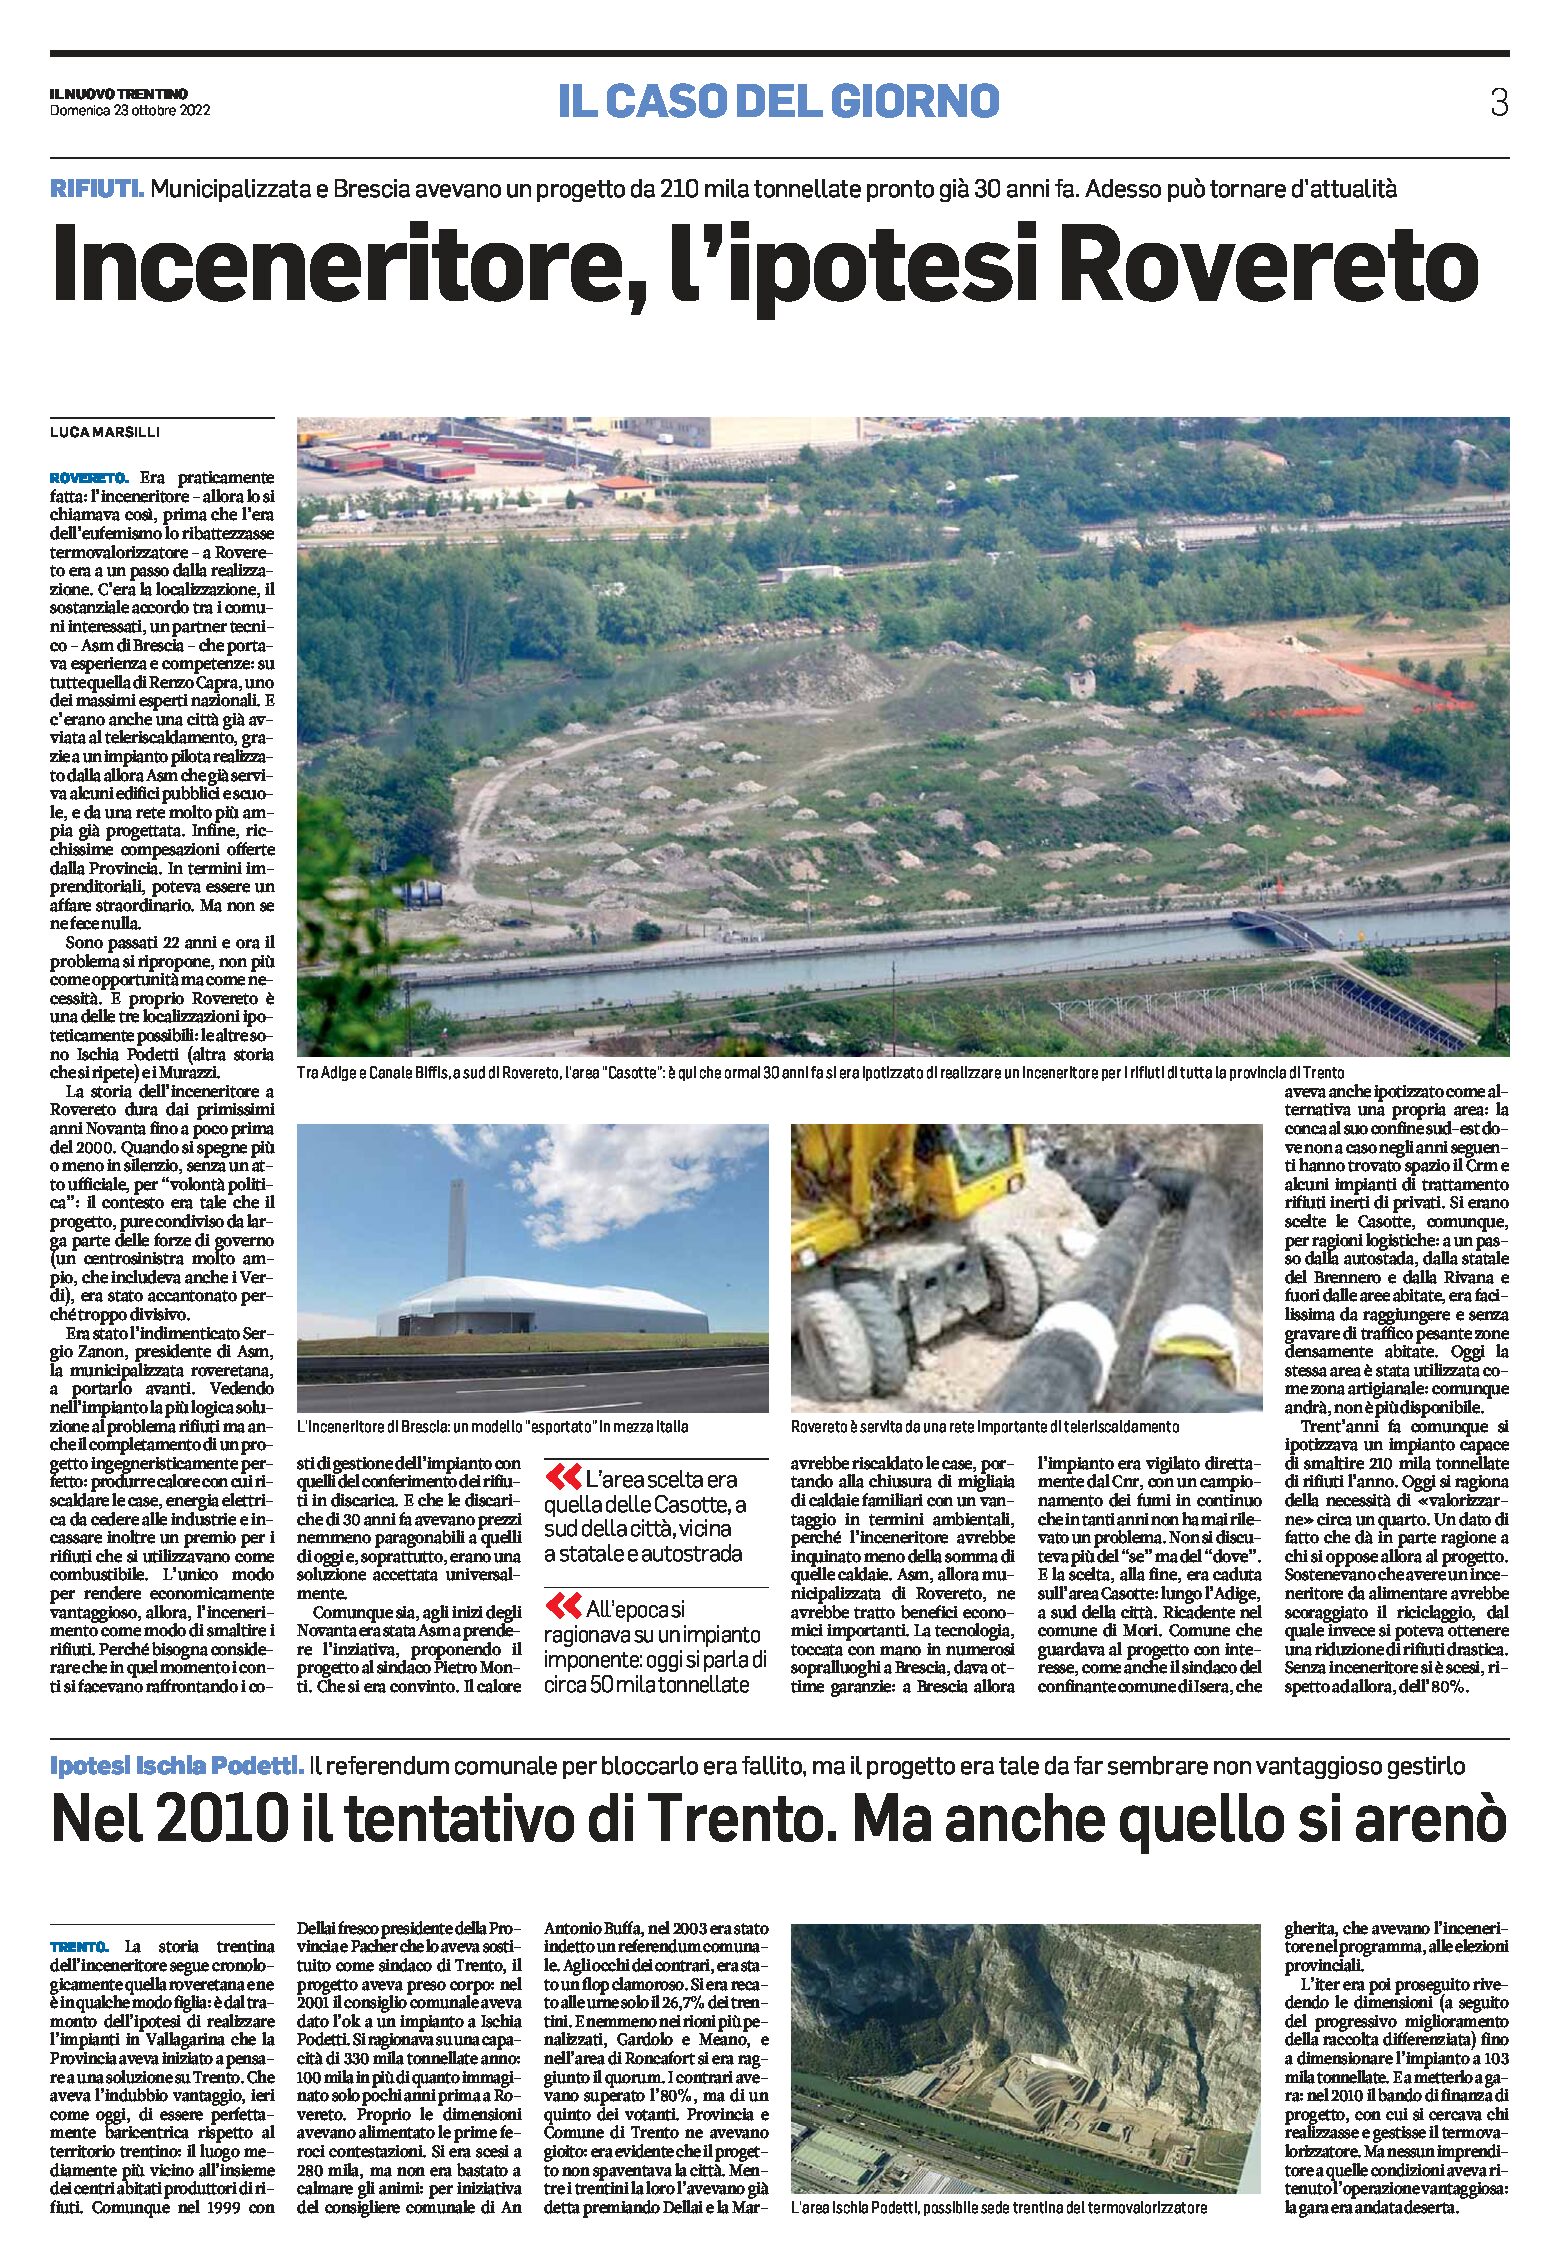 Trentino, inceneritore: l’ipotesi Rovereto